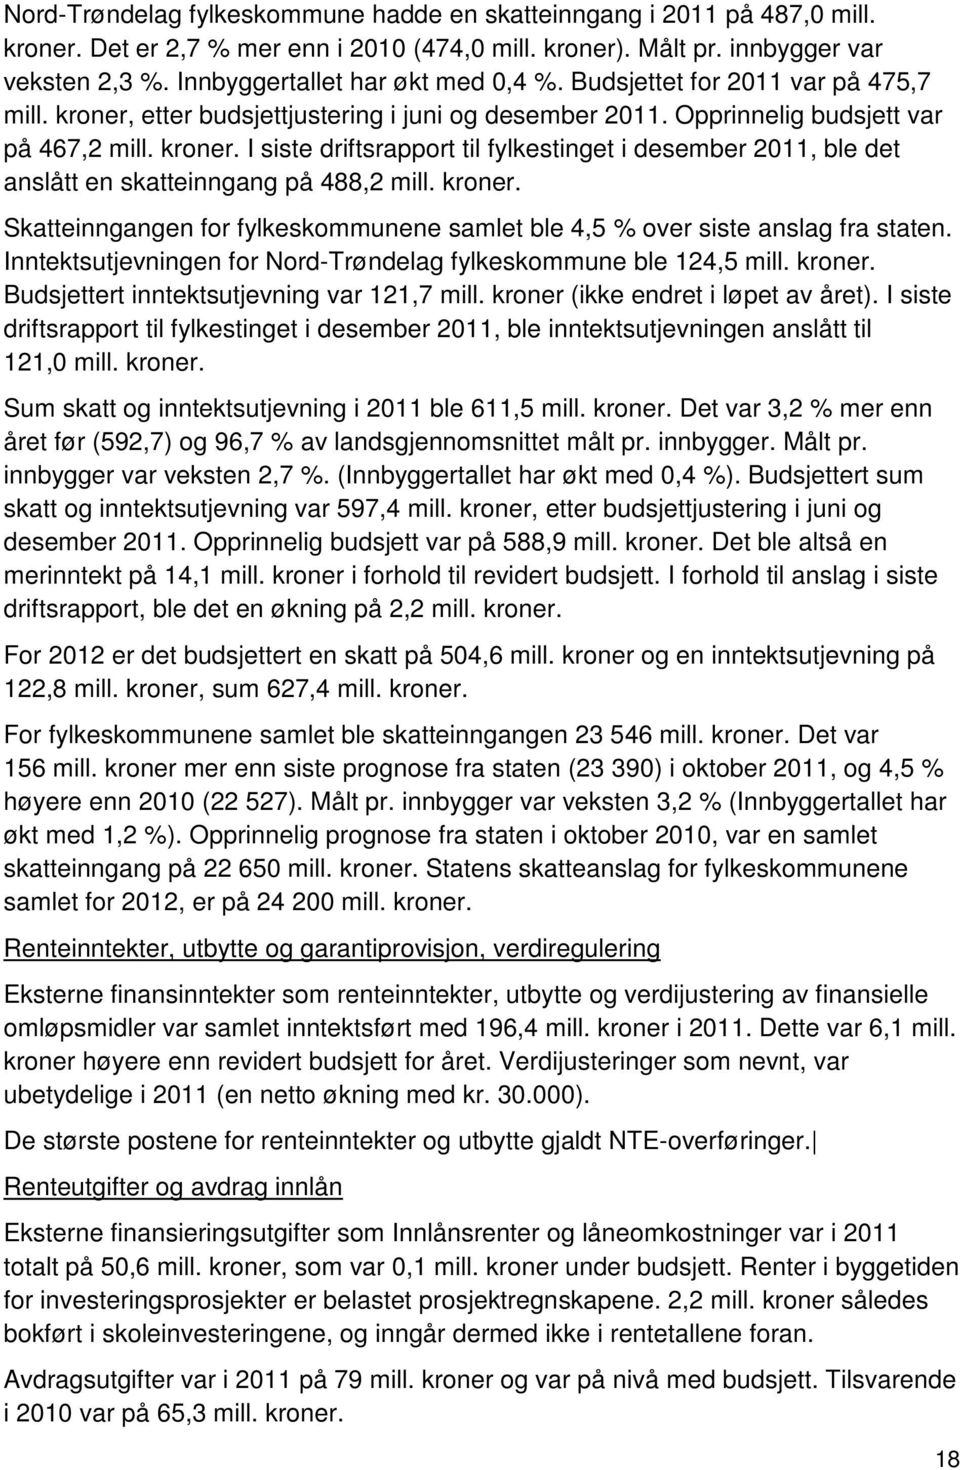 kroner. Skatteinngangen for fylkeskommunene samlet ble 4,5 % over siste anslag fra staten. Inntektsutjevningen for Nord-Trøndelag fylkeskommune ble 124,5 mill. kroner.